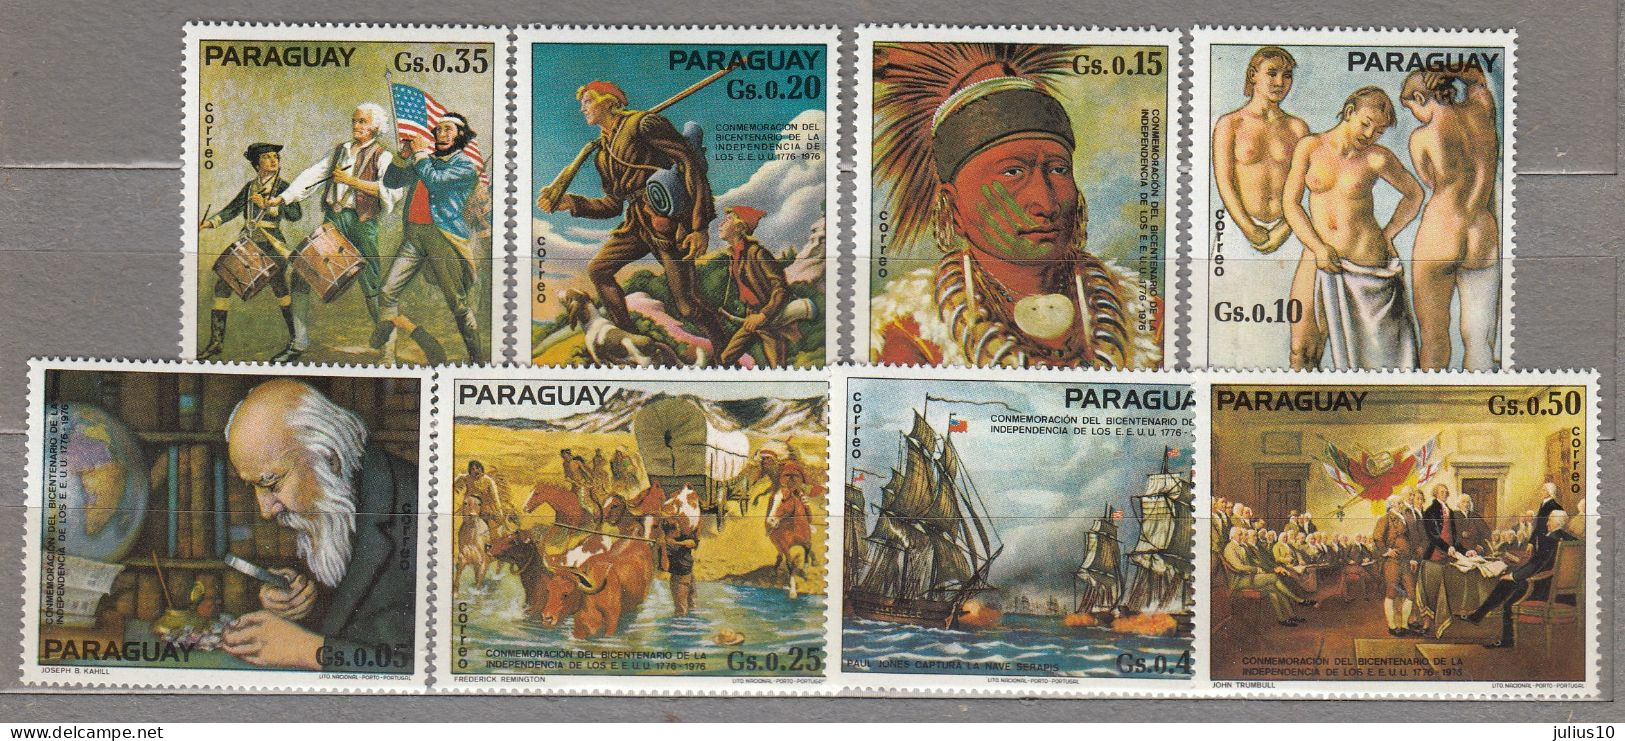 Paraguay 1975 America 200 Years Anniversary Mi 2729-2736 MNH(**) #34086 - Paraguay